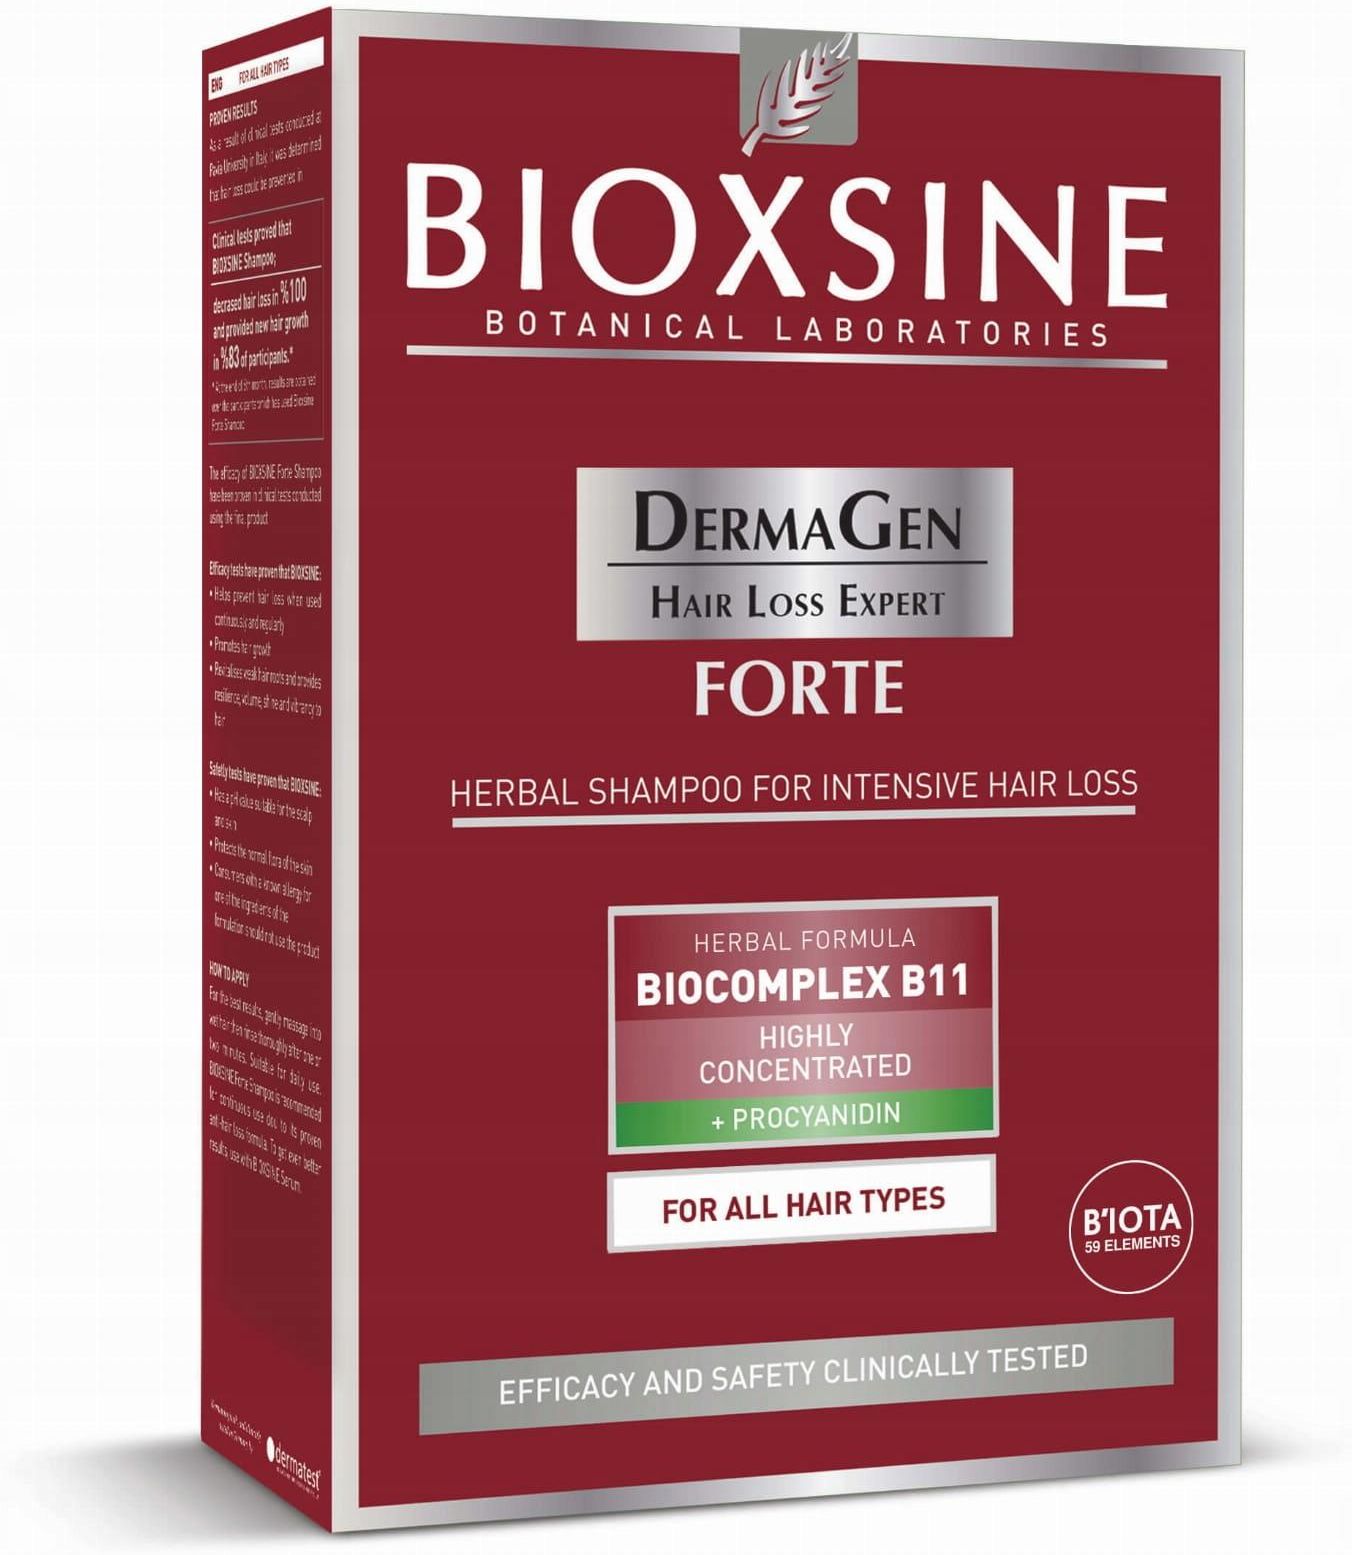 szampon bioxsine ceneo